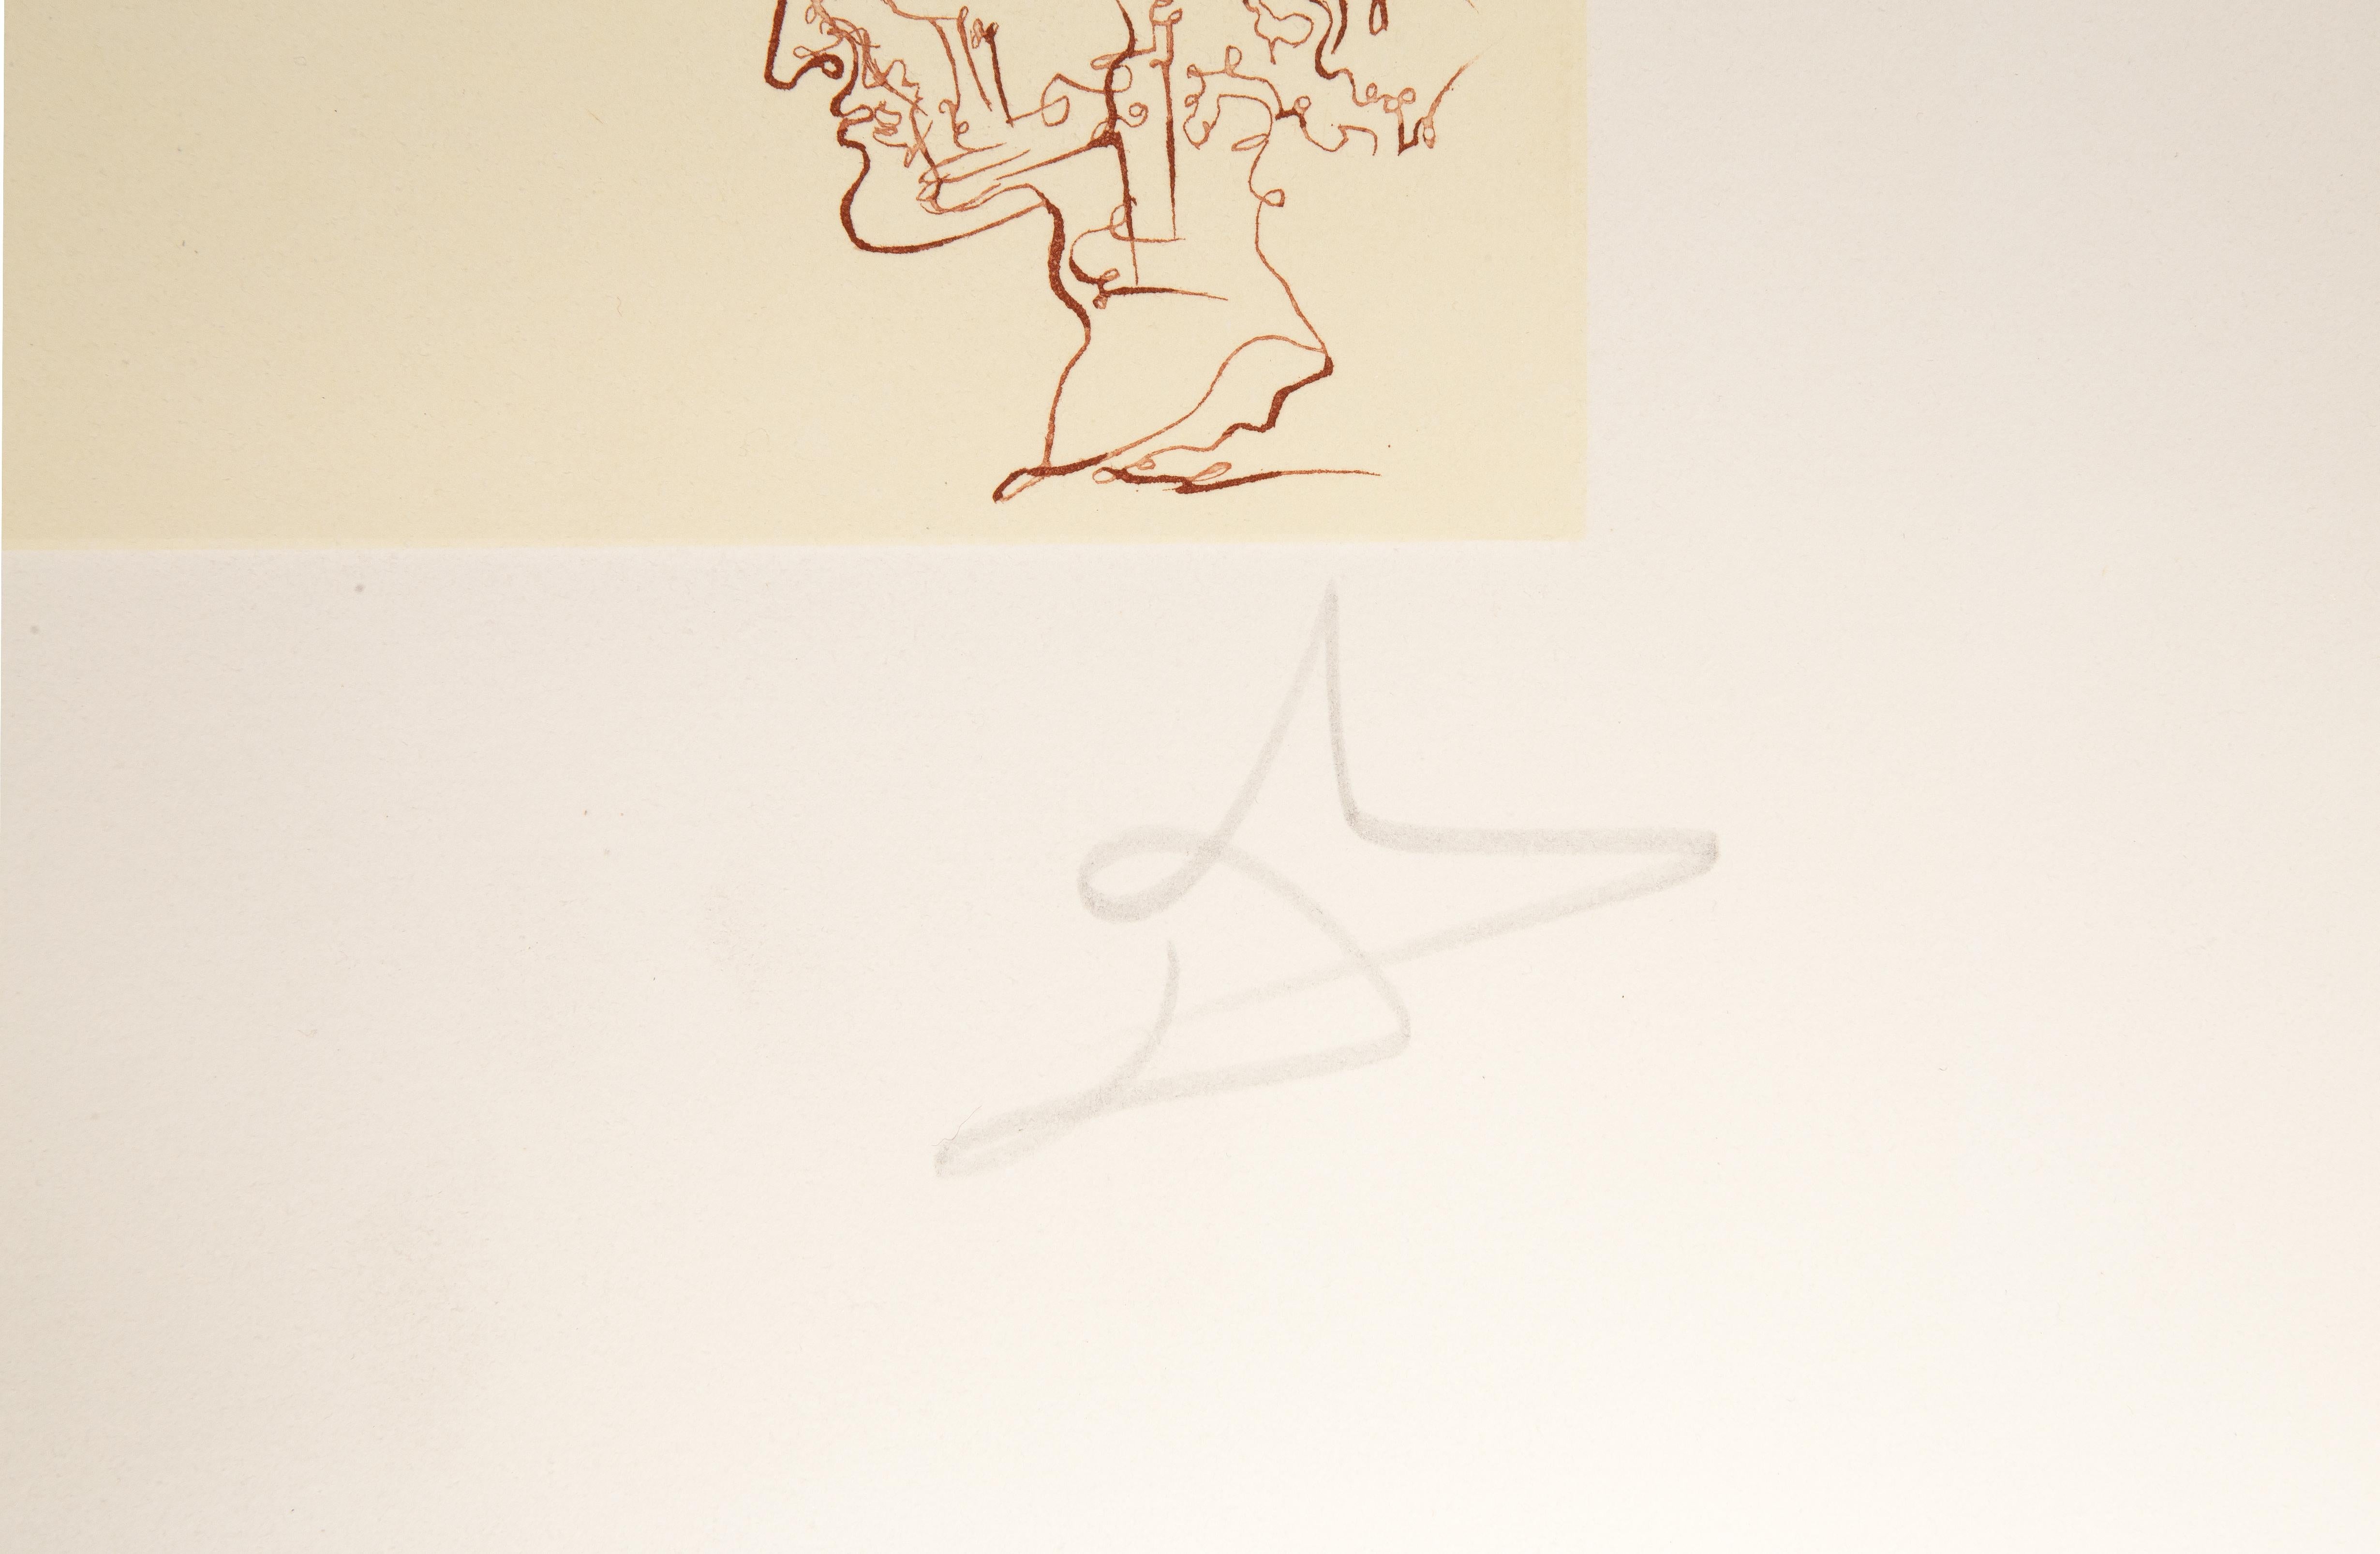 Lithographie et gravure sur papier Arches d'après le portfolio Les cycles de la vie de Salvador Dali, réalisé en 1977. Il a été imprimé par Forte et publié par Duall Graphics pour DALART. Elle est référencée dans Field sous le nom de